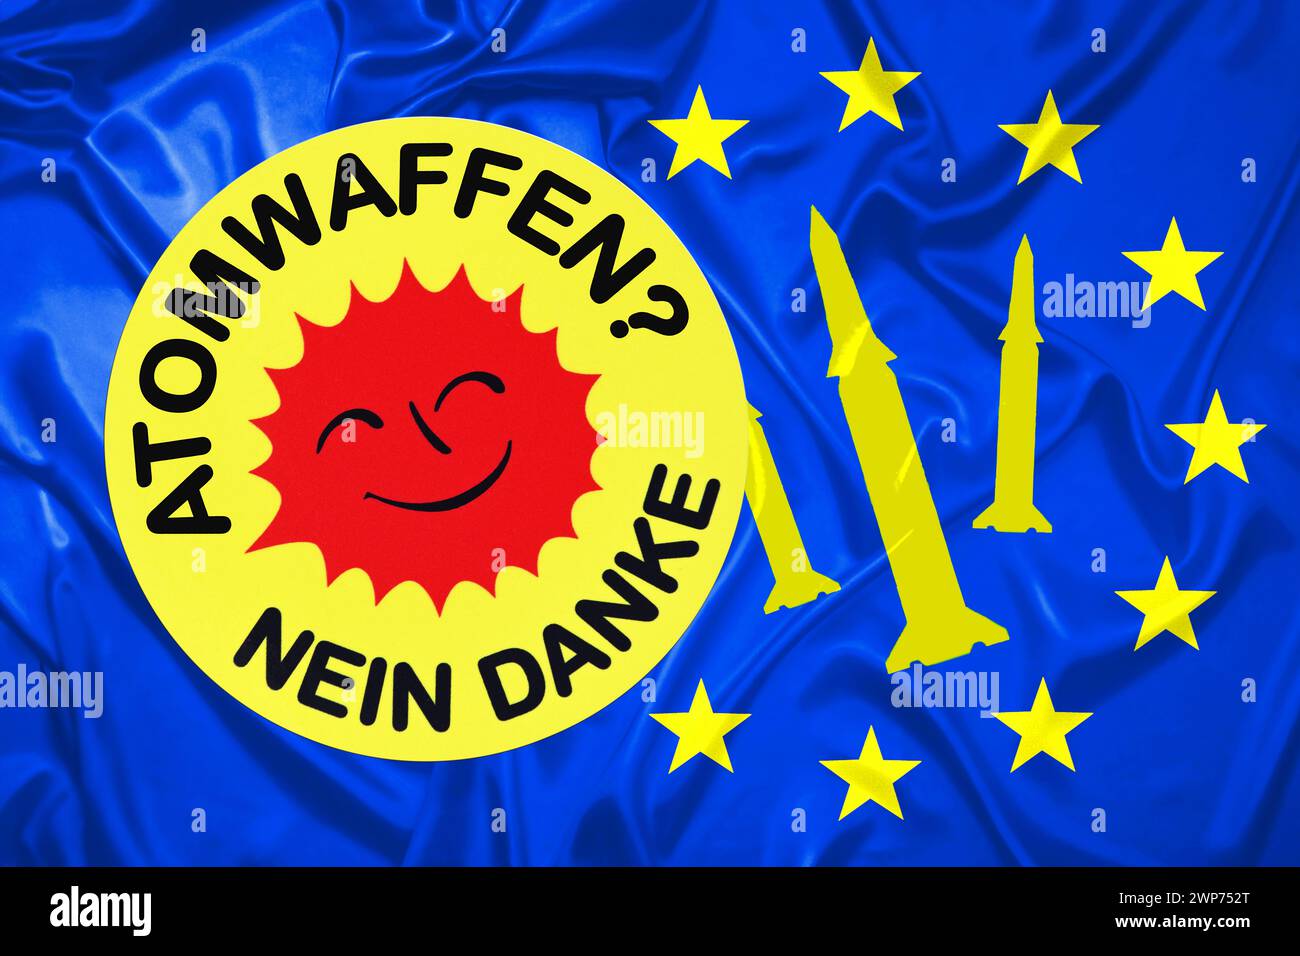 FOTOMONTAGE, Aufkleber mit Aufschrift Atomwaffen? - Nein danke auf EU-Fahne Stock Photo